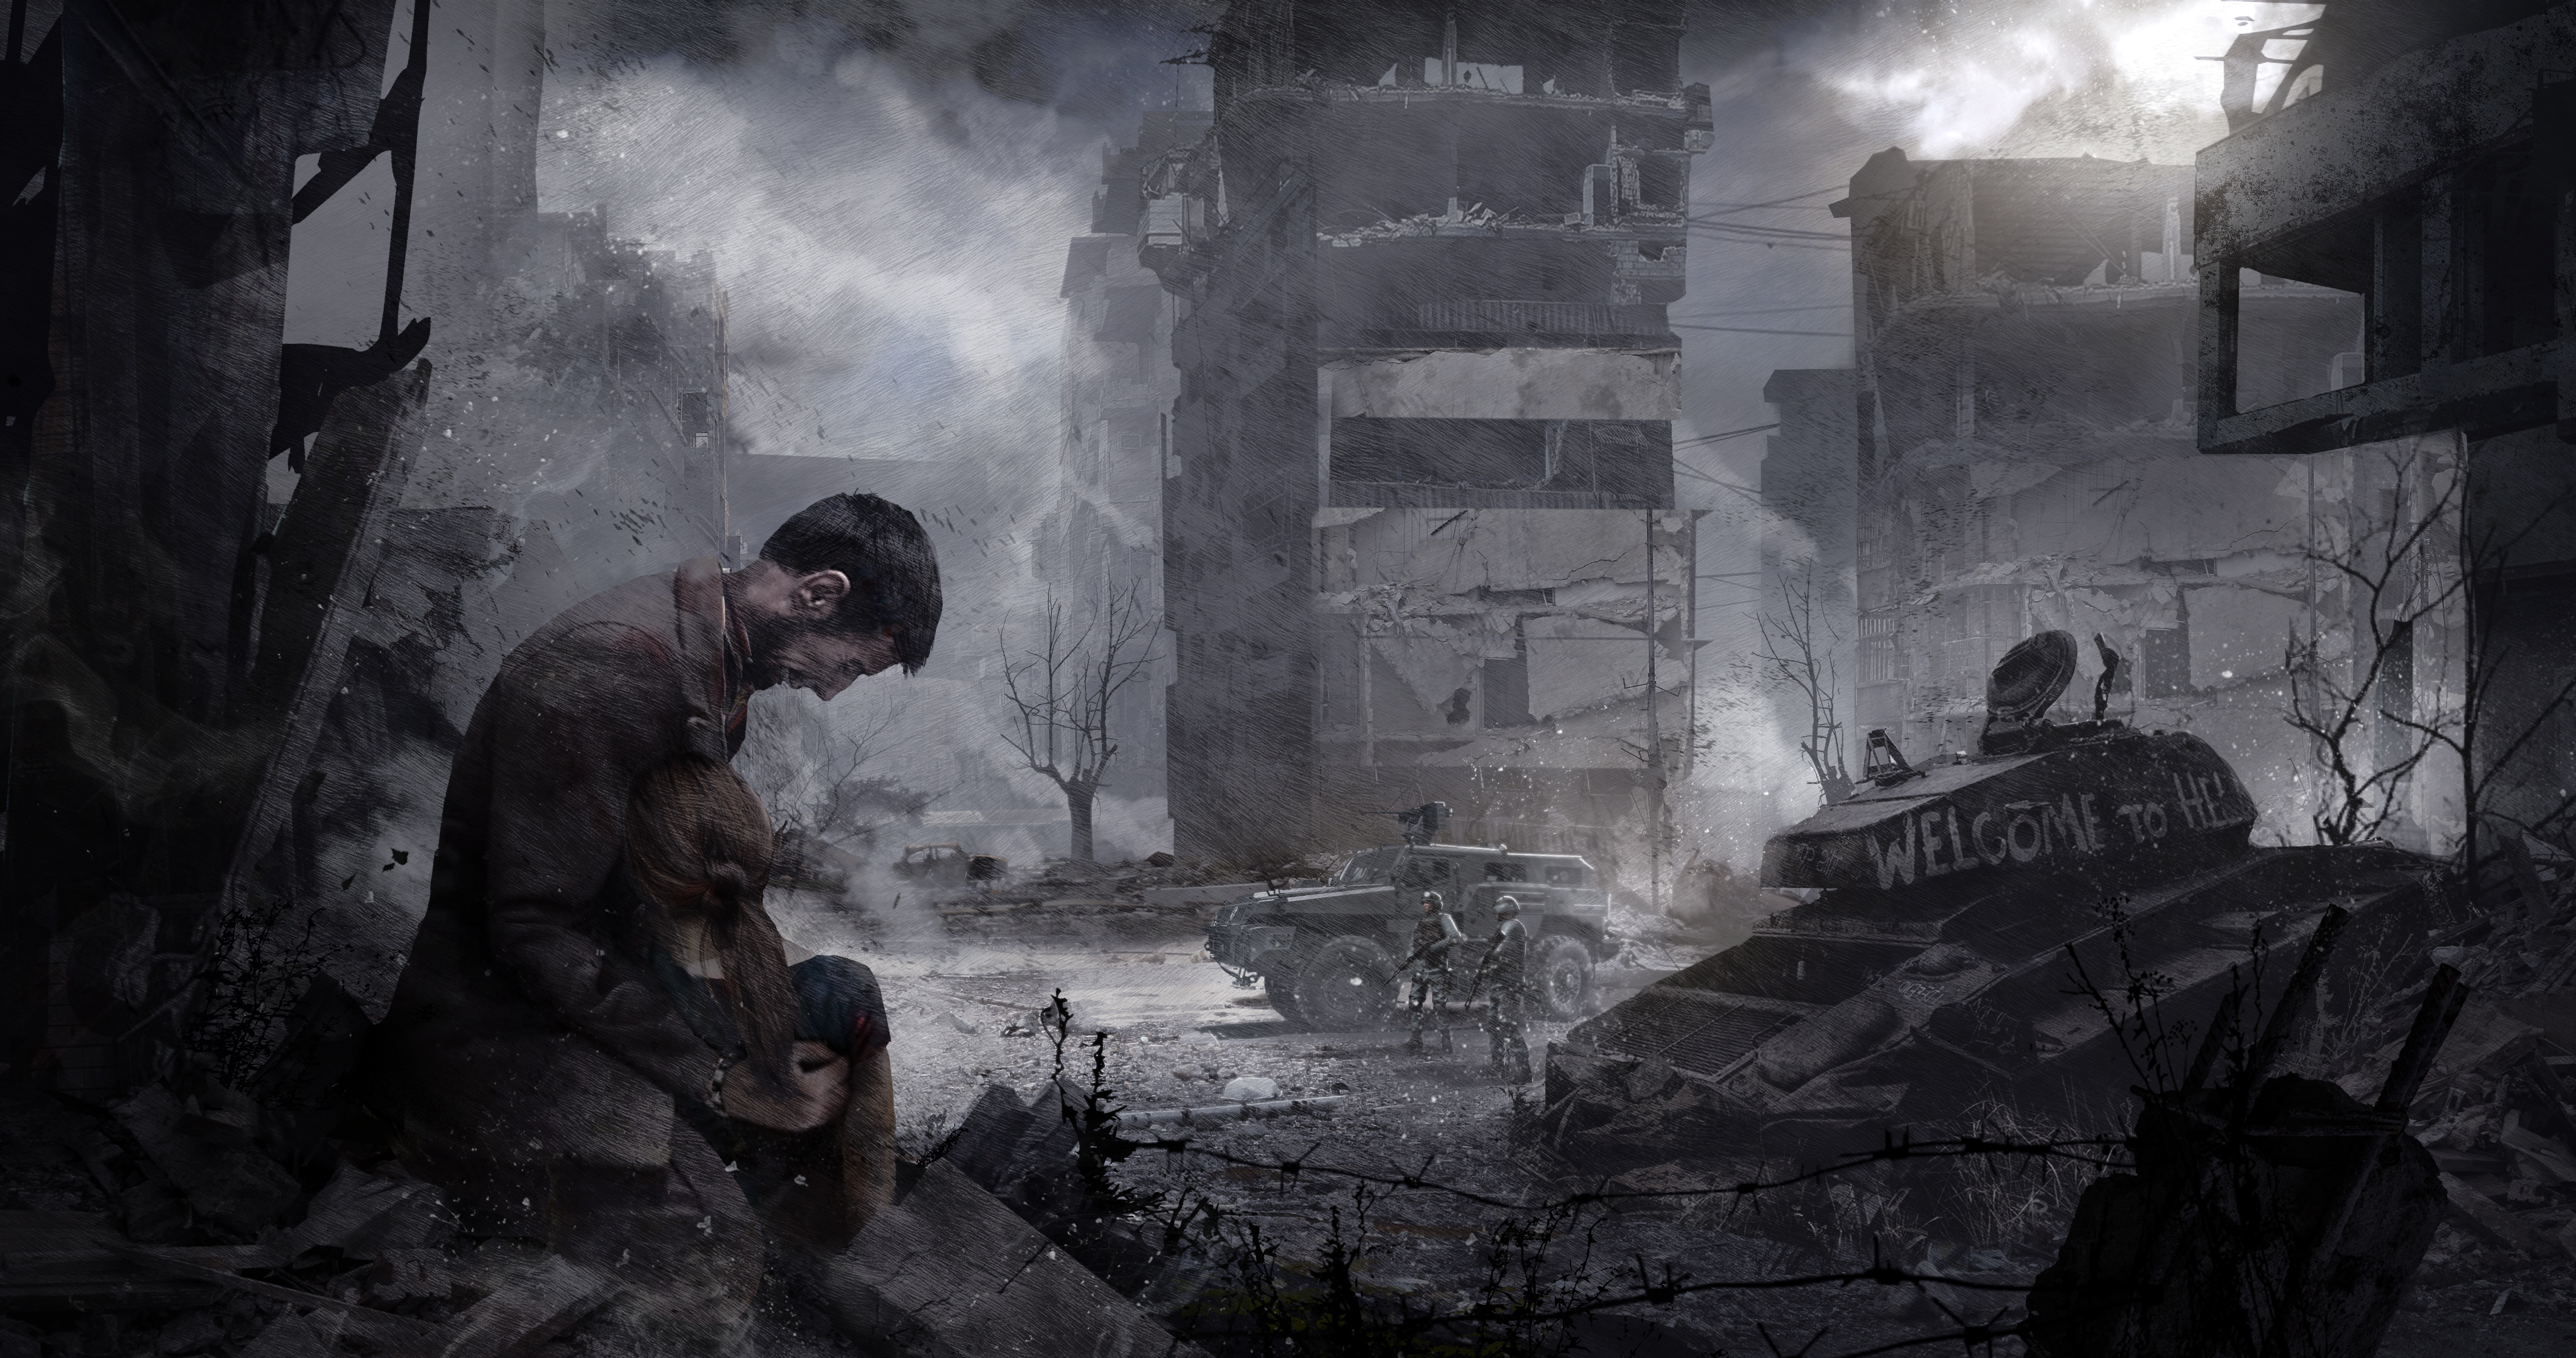 Artwork des Spiels "This War of Mine". Ein Mann hält ein Mädchen in den Armen, während er verzweifelt schreit. Sie sind in einer zestörten Stadt. Farbentsättigt.